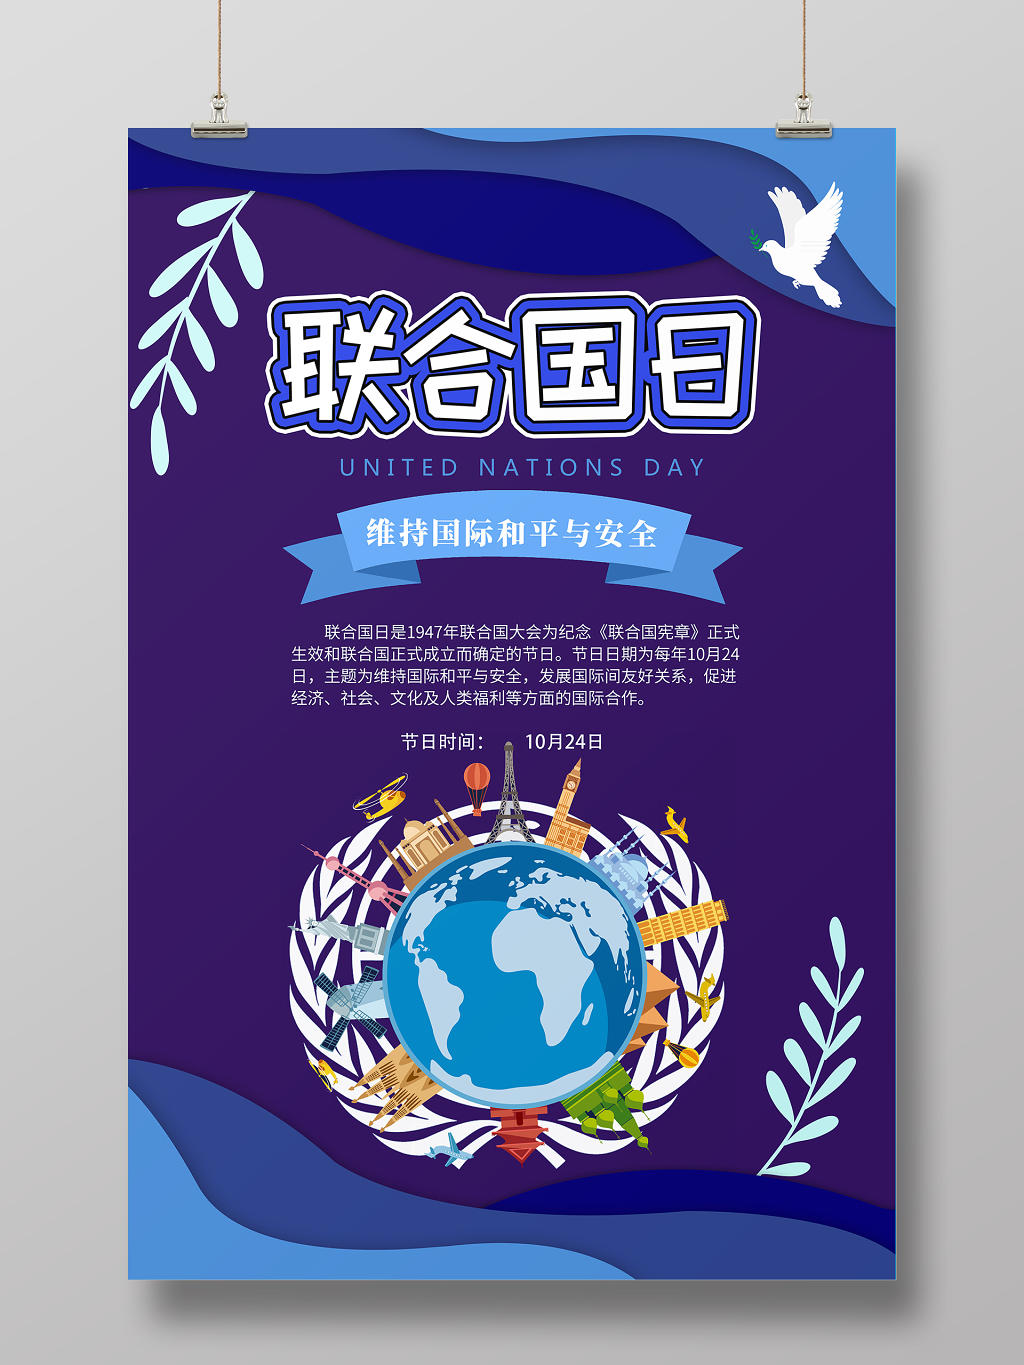 紫色简约剪纸风纪念日联合国日宣传海报